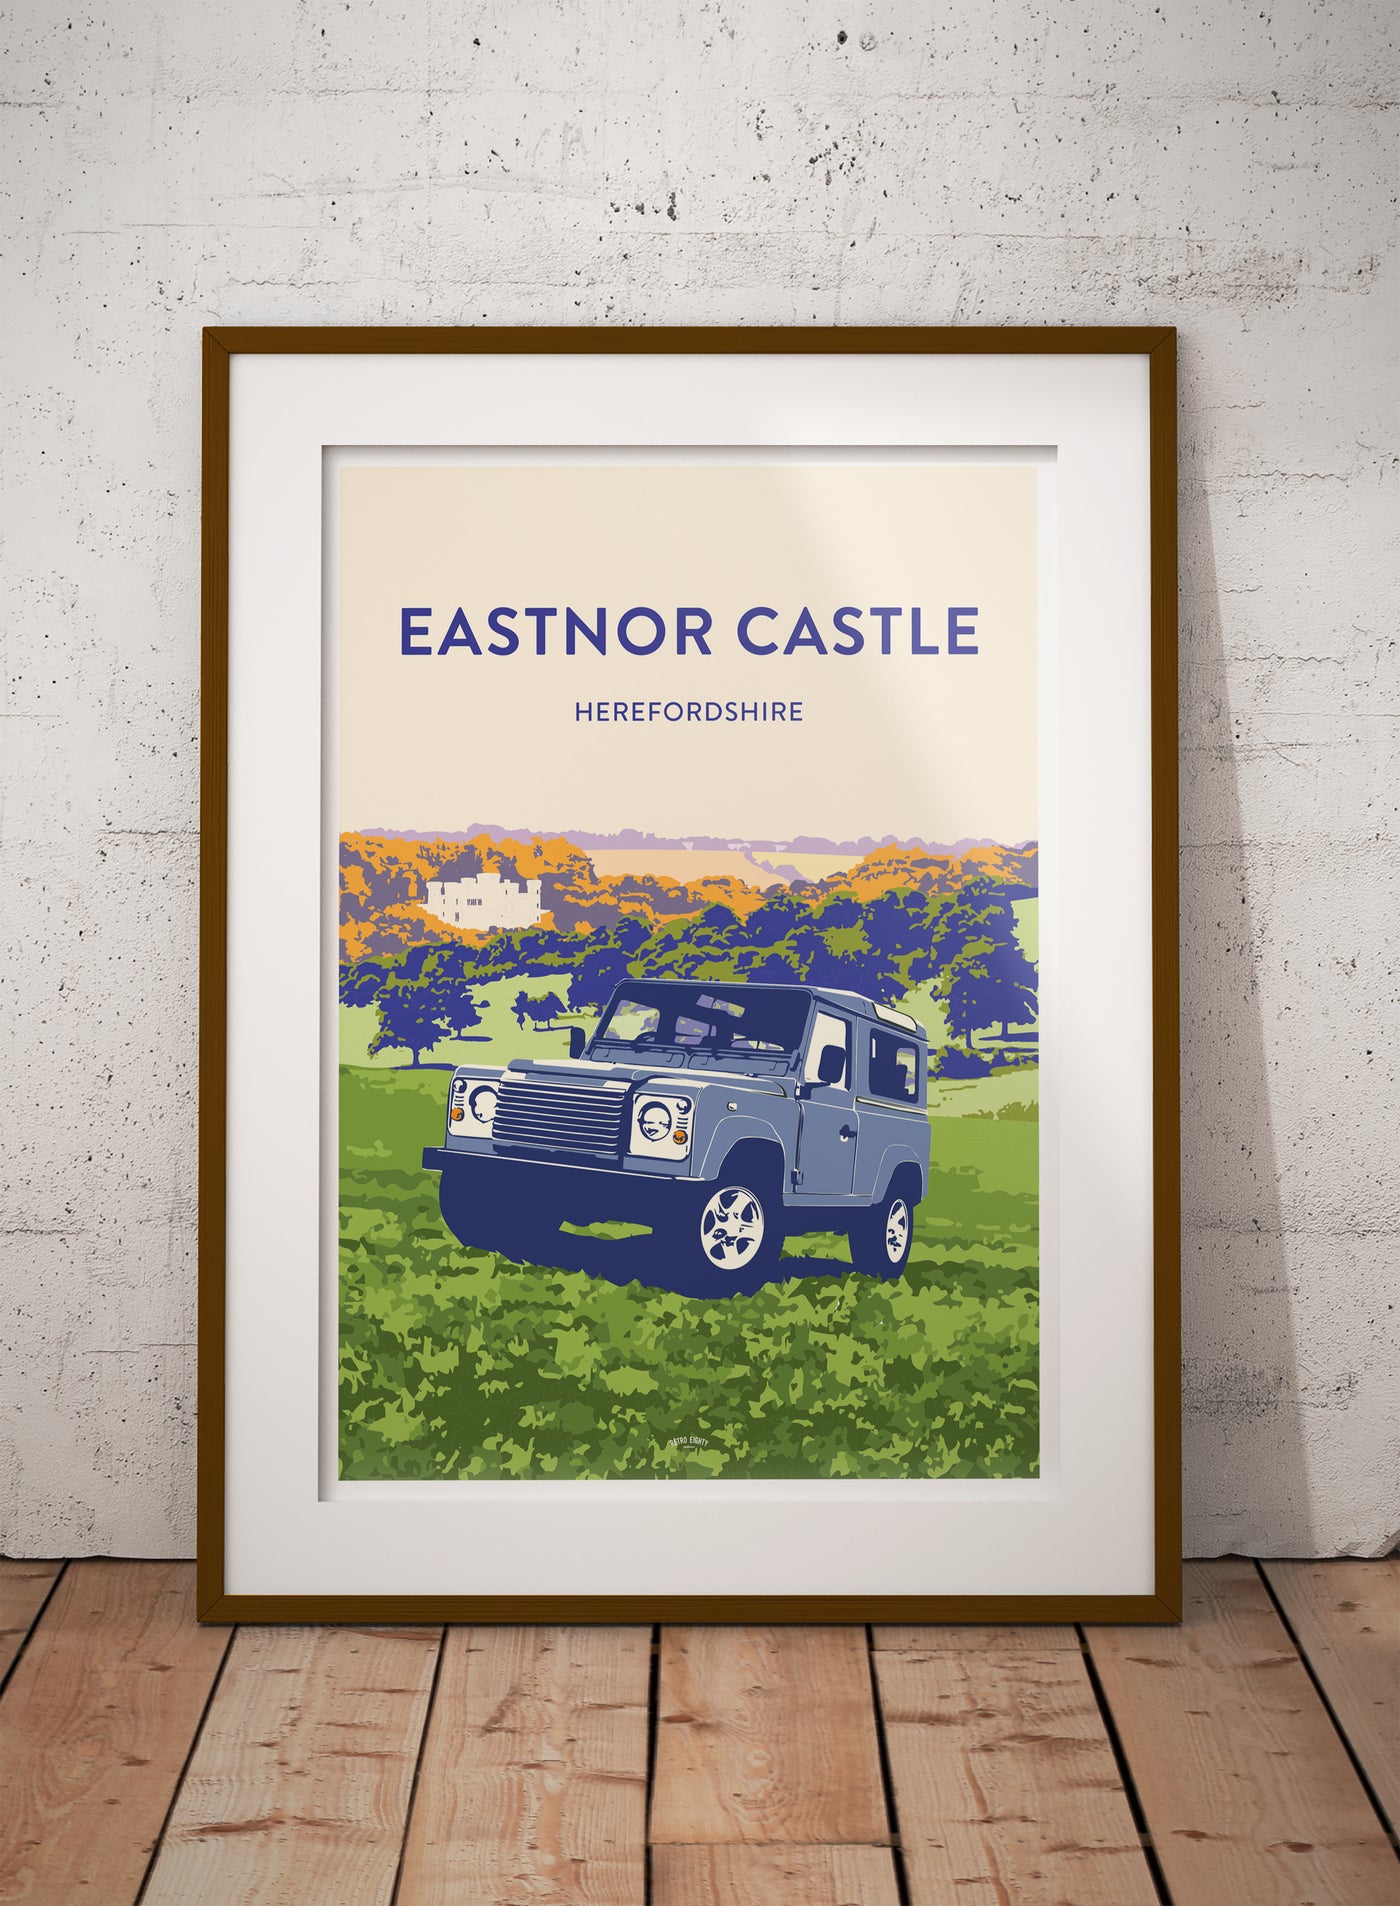 'Eastnor Castle' 90 prints